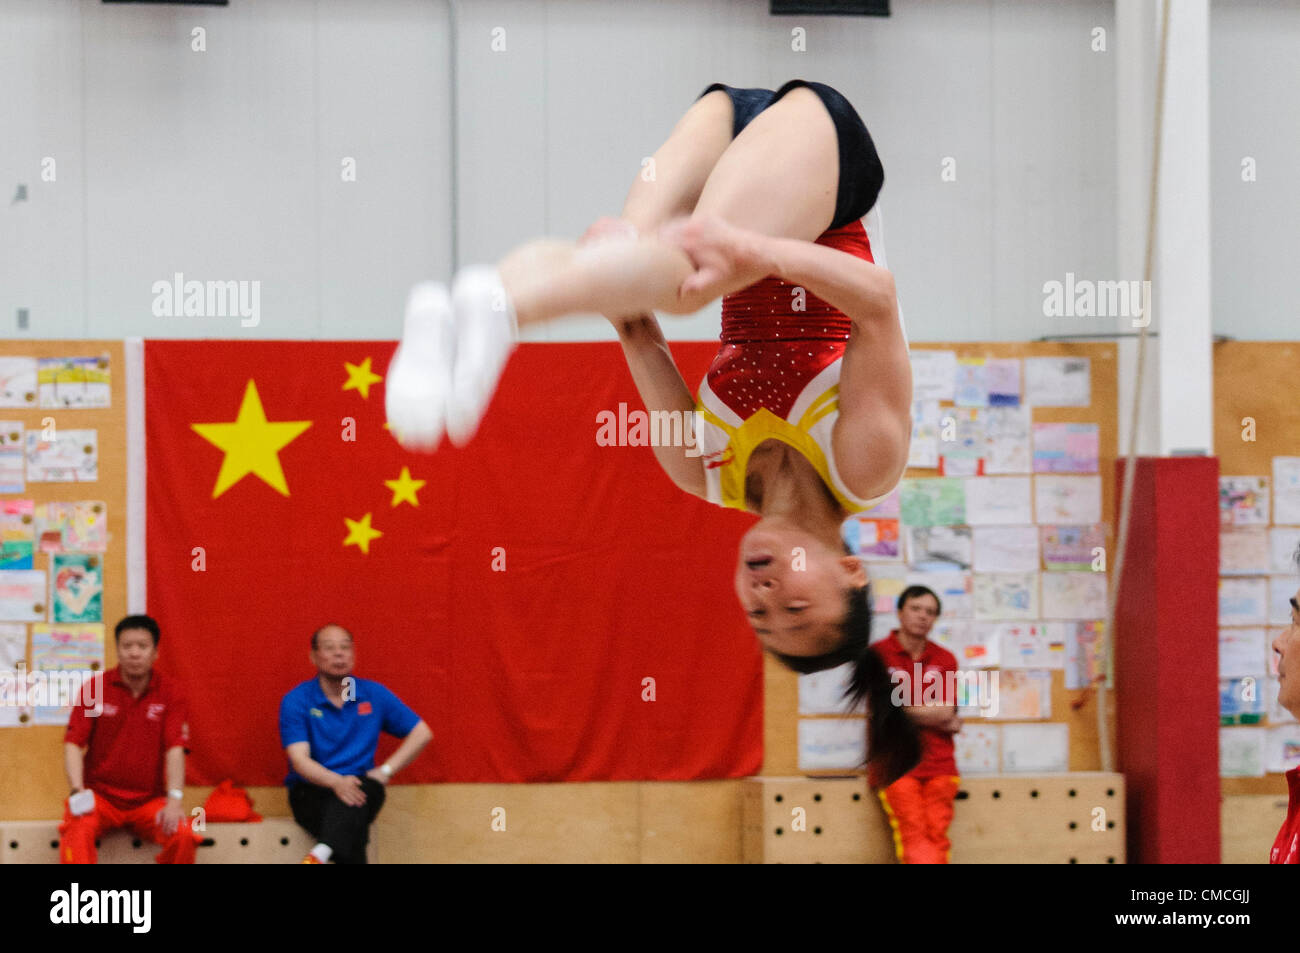 Lisburn, 18/07/2012 - gymnastique chinoise dans la formation de l'équipe pour les Jeux Olympiques de 2012 à Londres à Lisburn, Irlande du Nord Banque D'Images